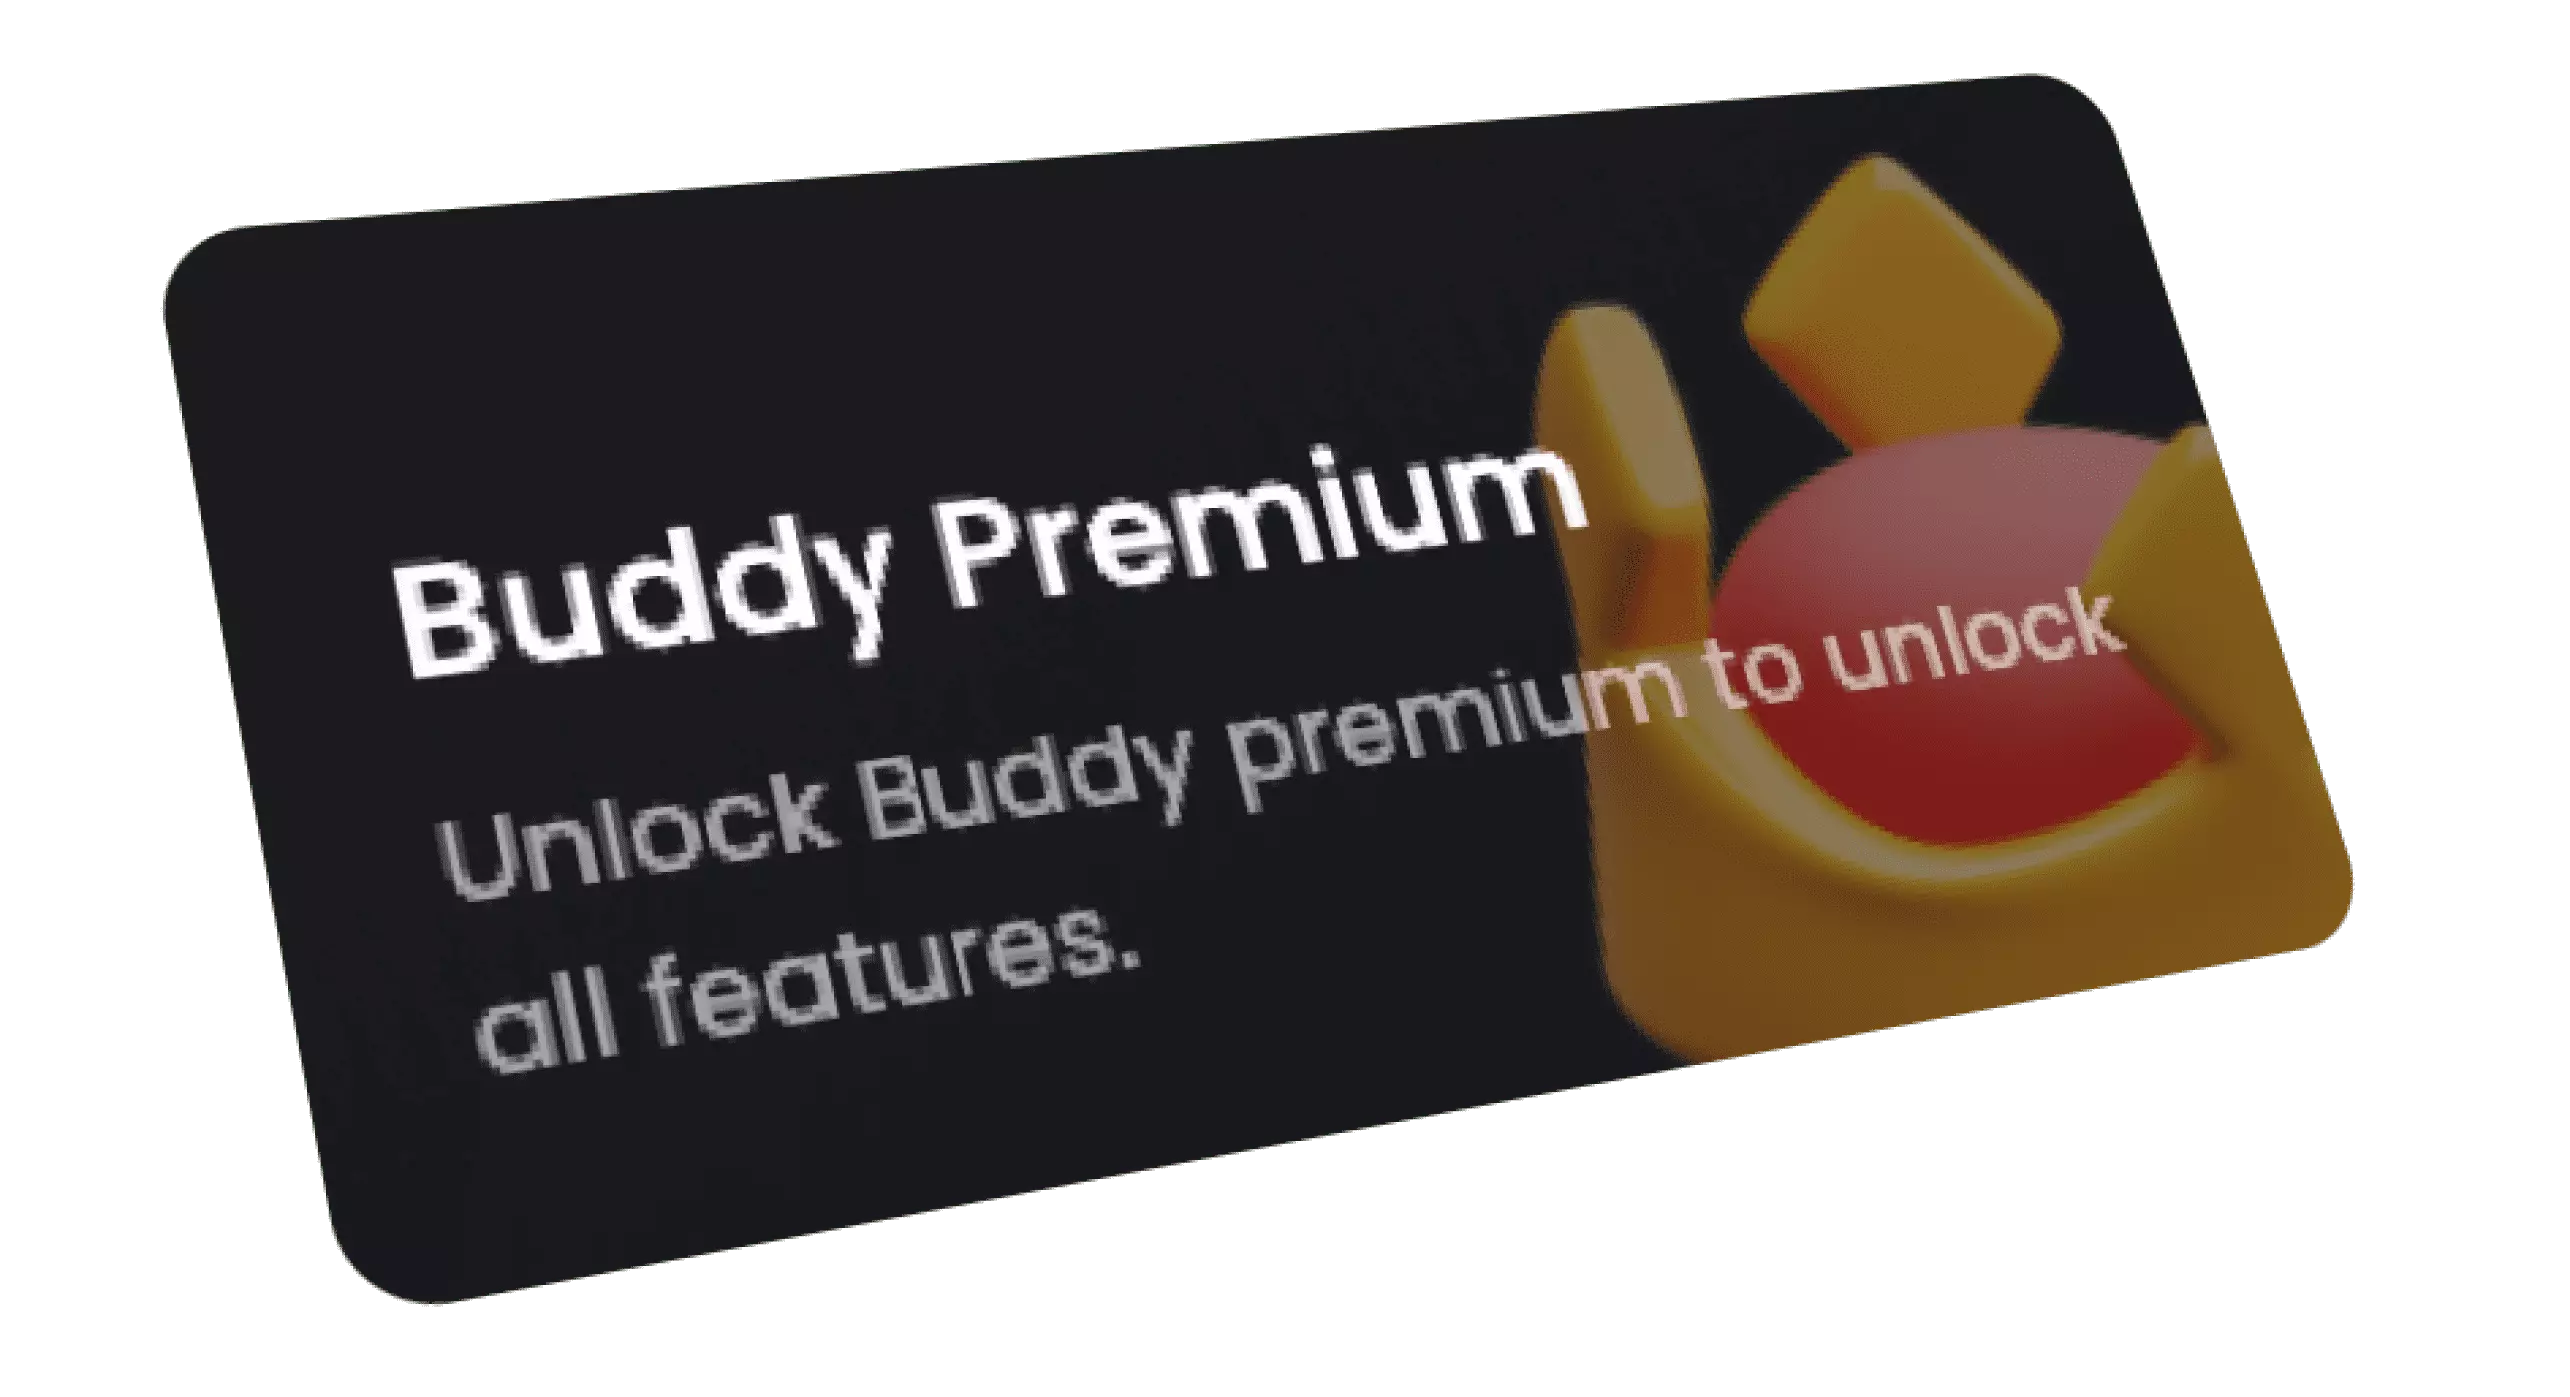 Buddy premium